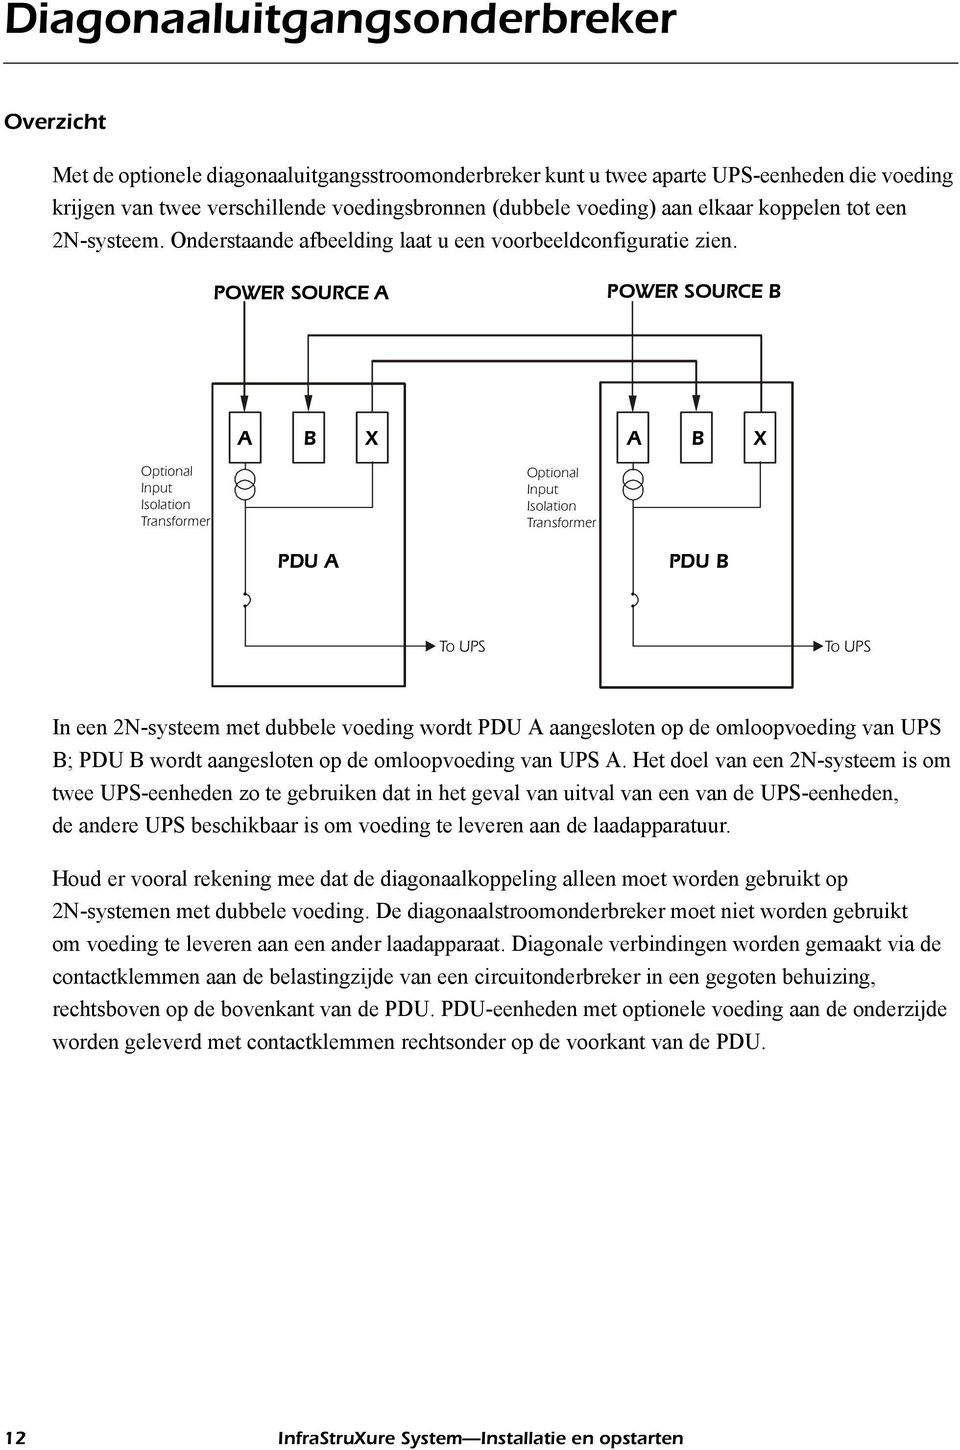 POWER SOURCE A POWER SOURCE B A B X A B X Optional Input Isolation Transformer Optional Input Isolation Transformer PDU A PDU B To UPS To UPS In een 2N-systeem met dubbele voeding wordt PDU A